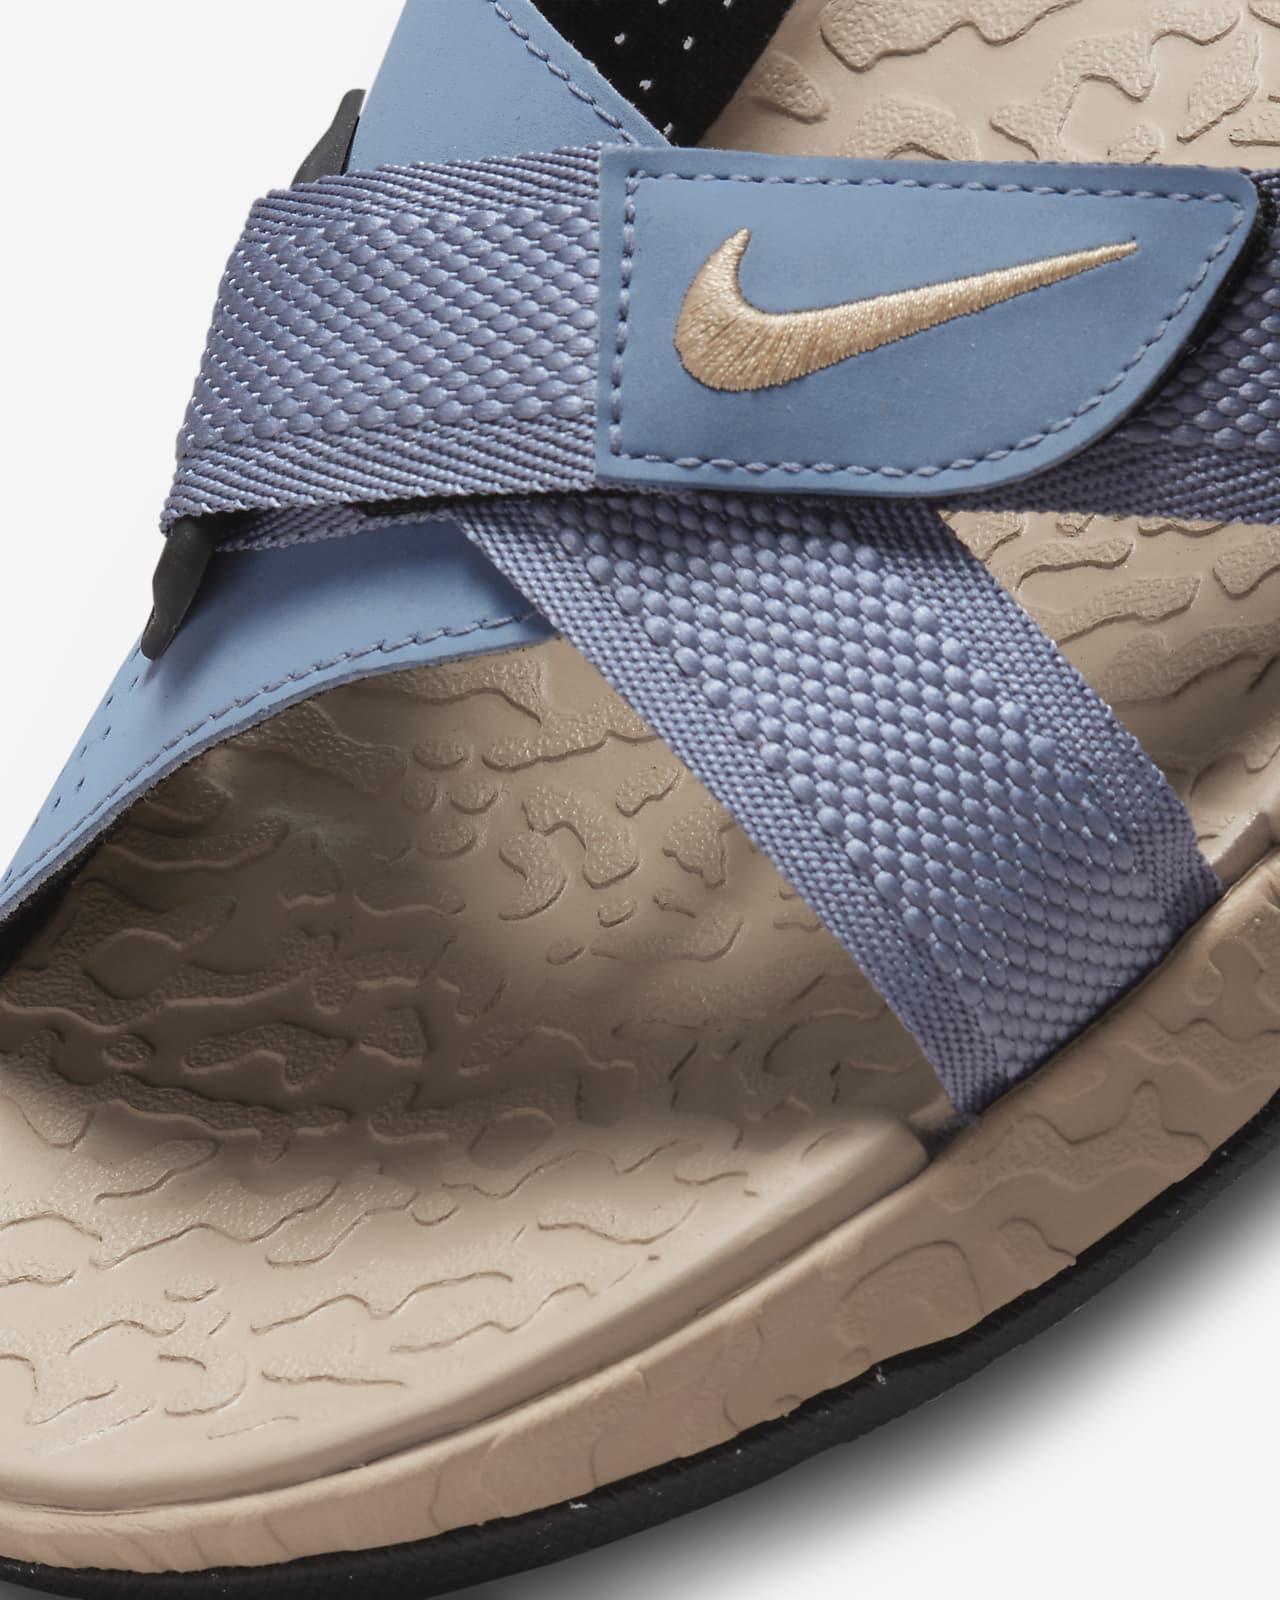 ACG Air Deschutz+ Sandals. Nike FI